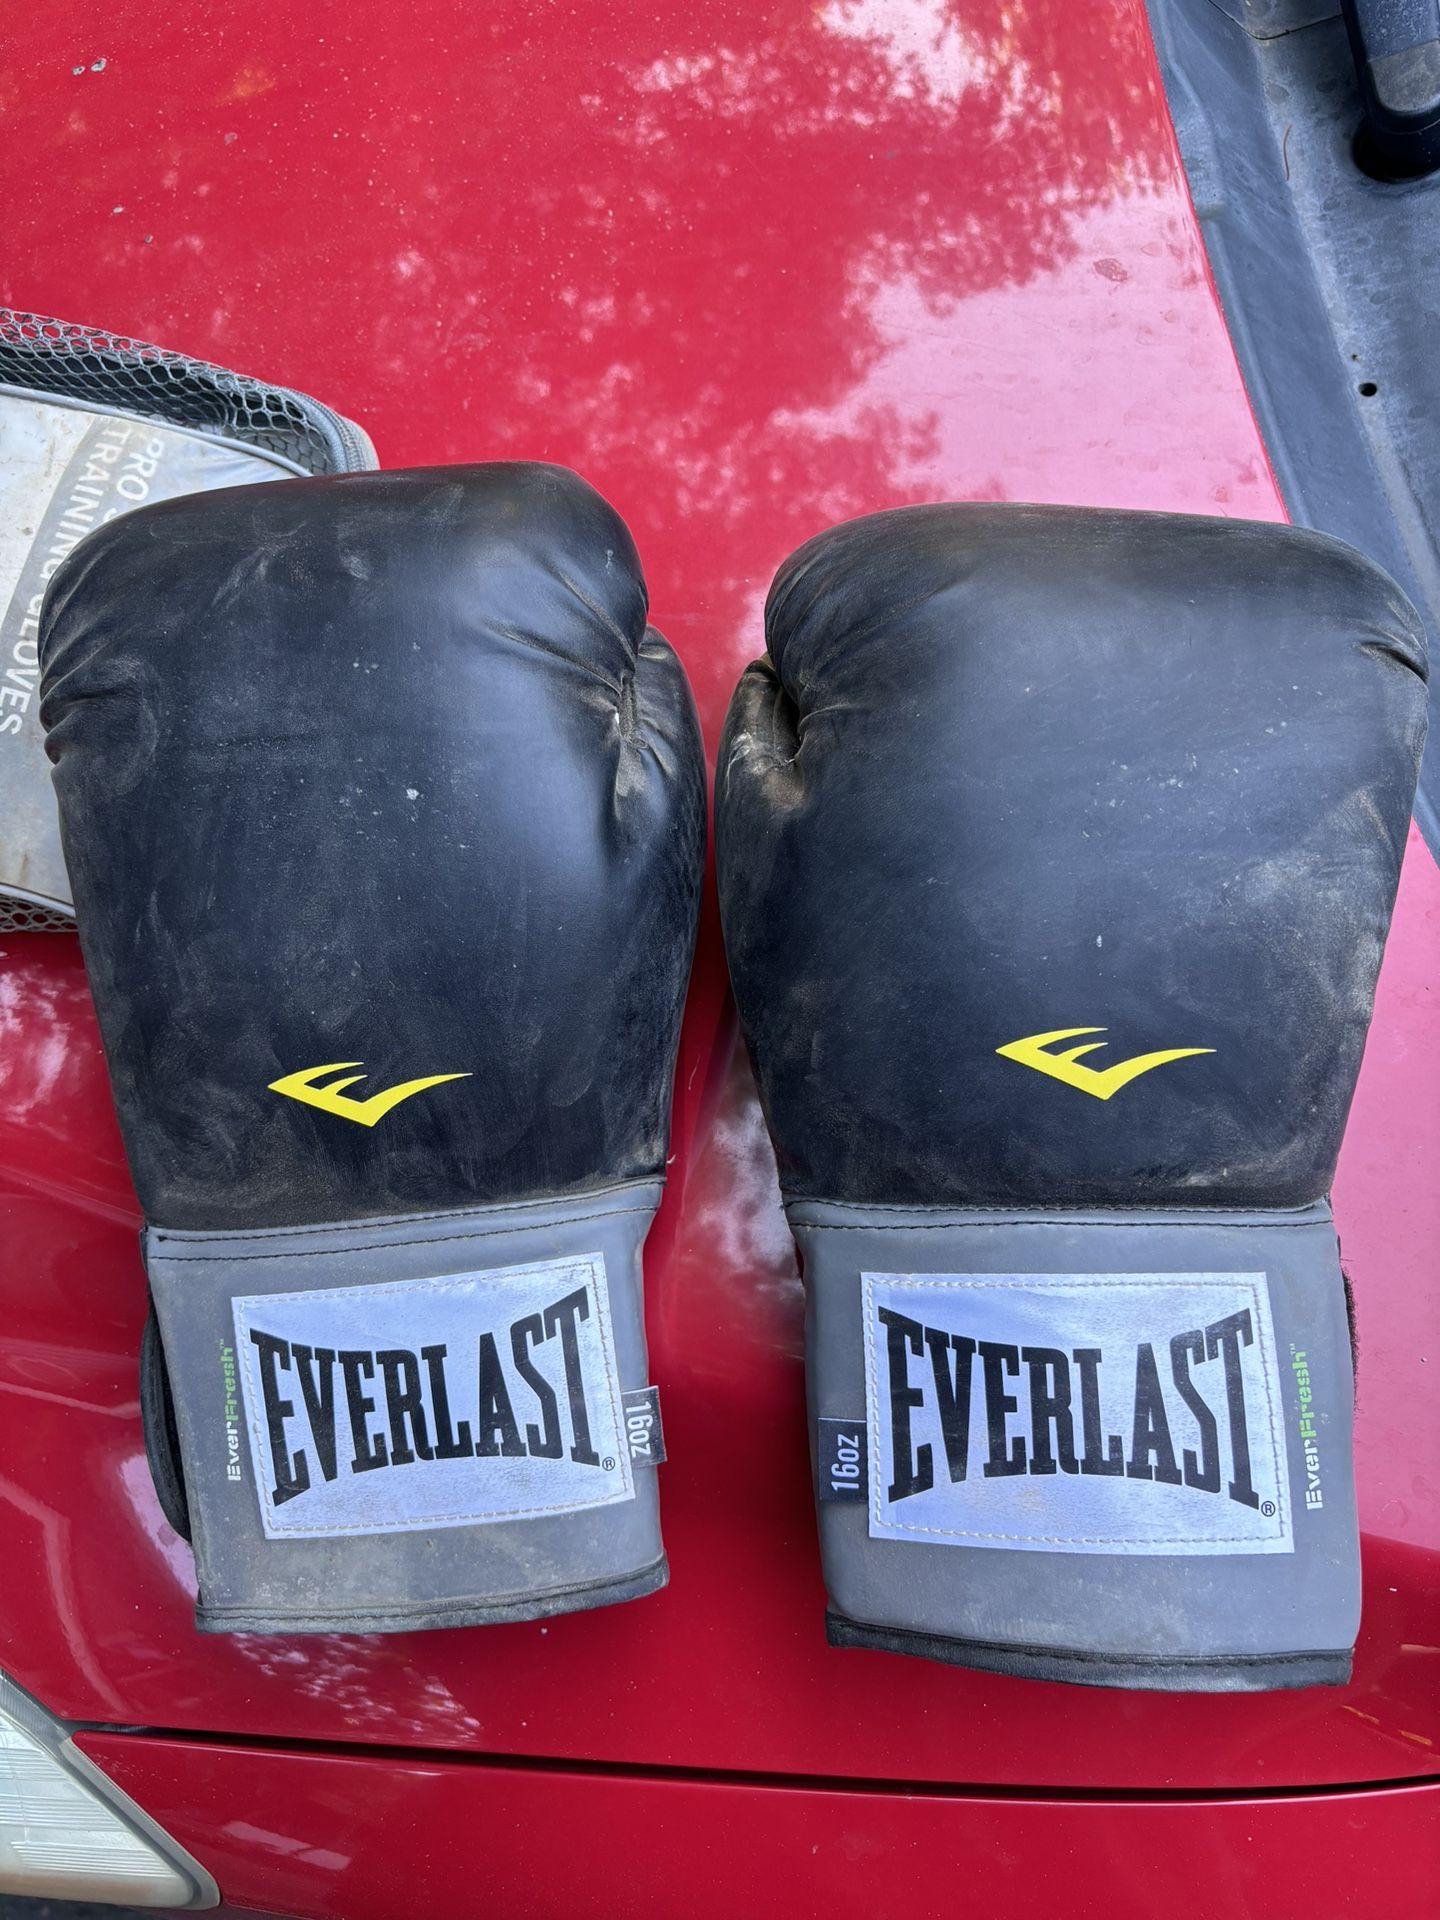 16oz Everlast Boxing Gloves - 2 Pair